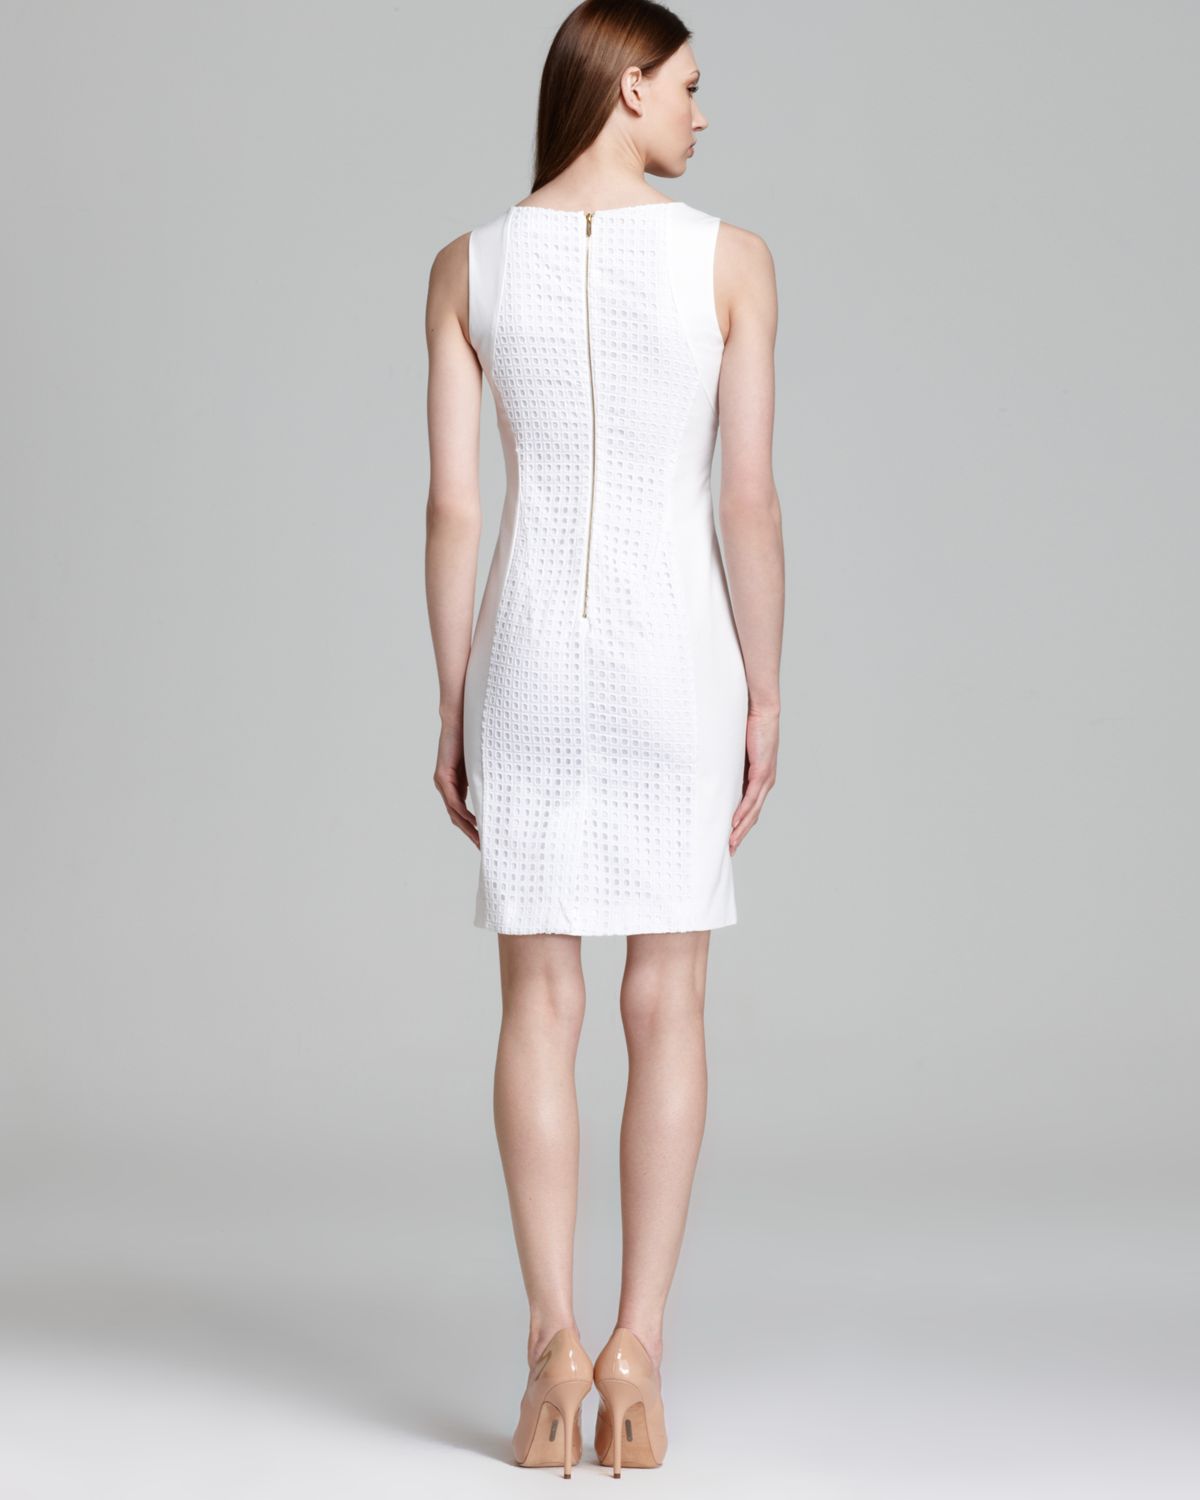 Lyst - Calvin Klein Seamed Dress in White